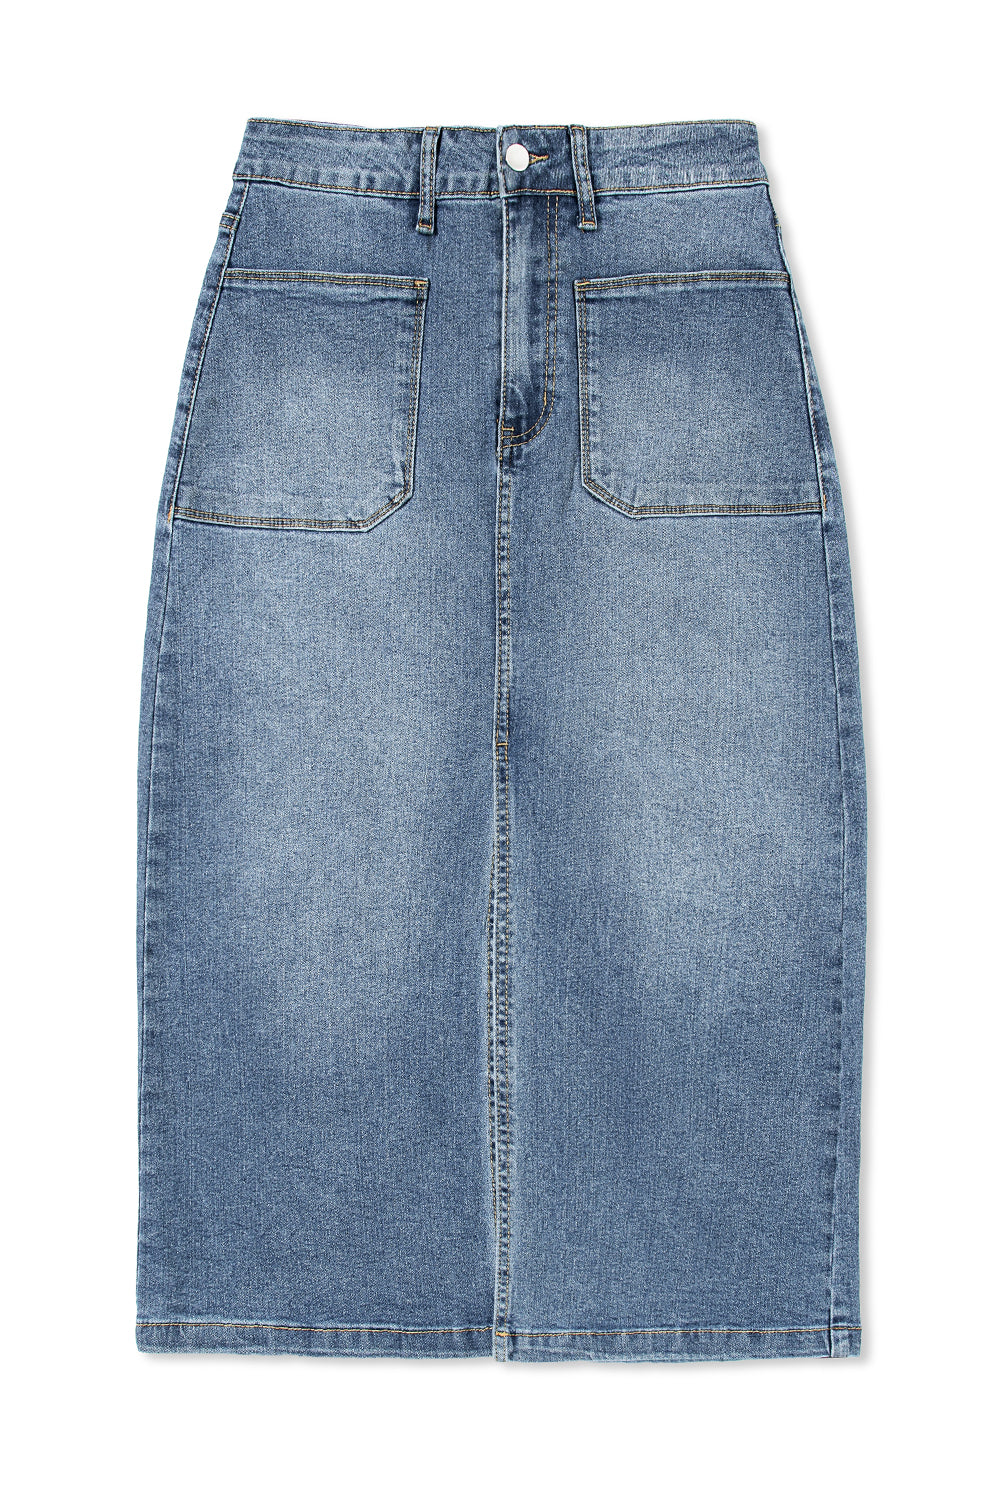 Jupe midi en jean bleu ciel avec 4 poches plaquées et fente sur le devant